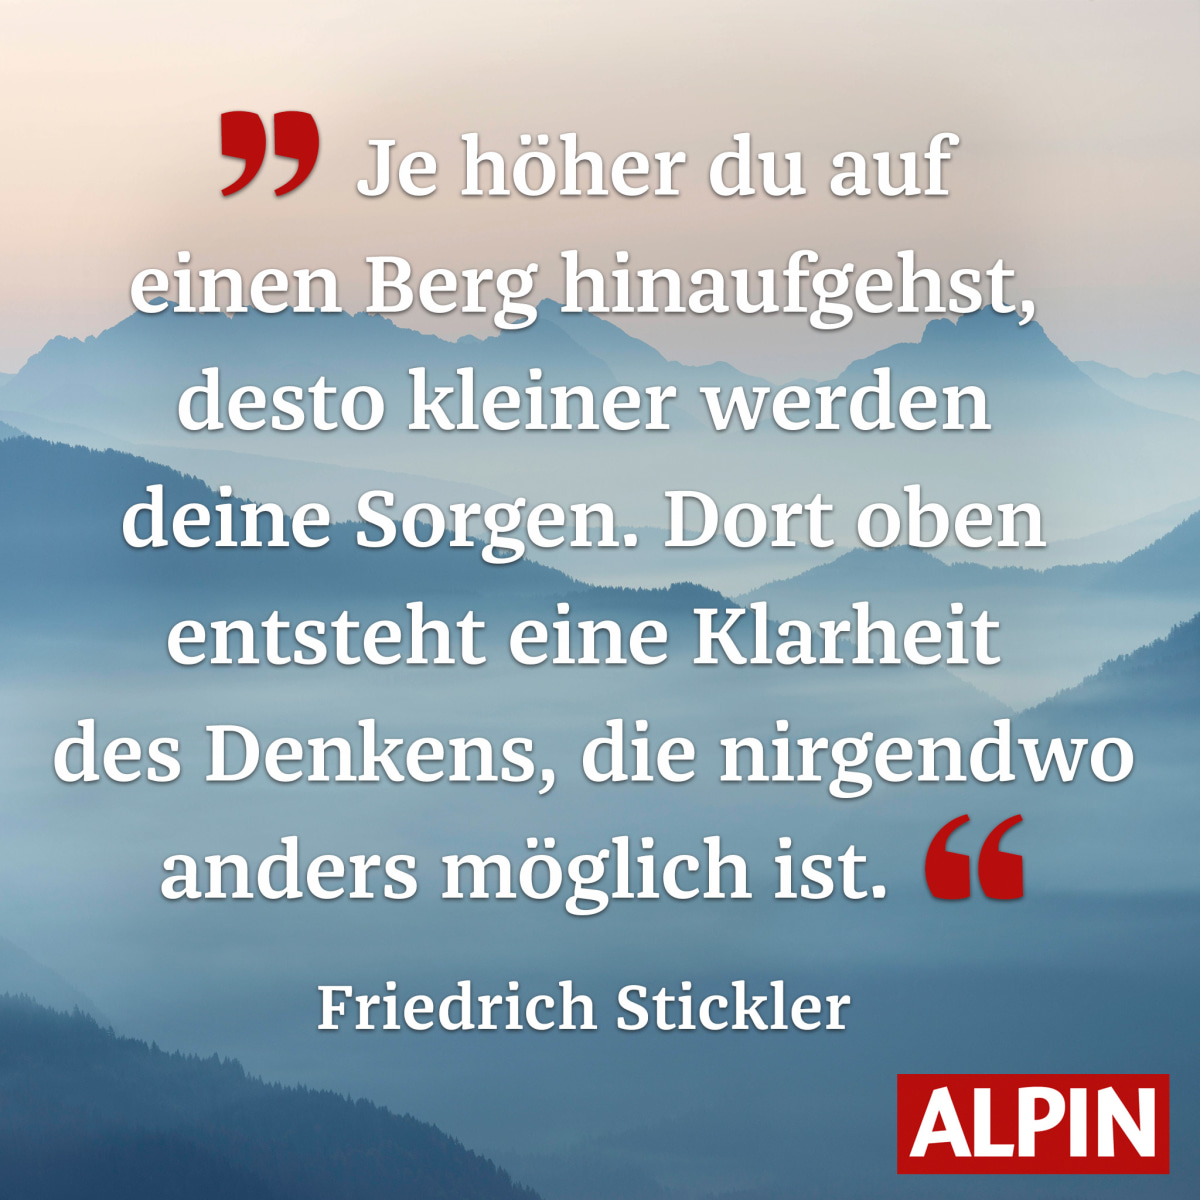 Zitat von Friedrich Stickler